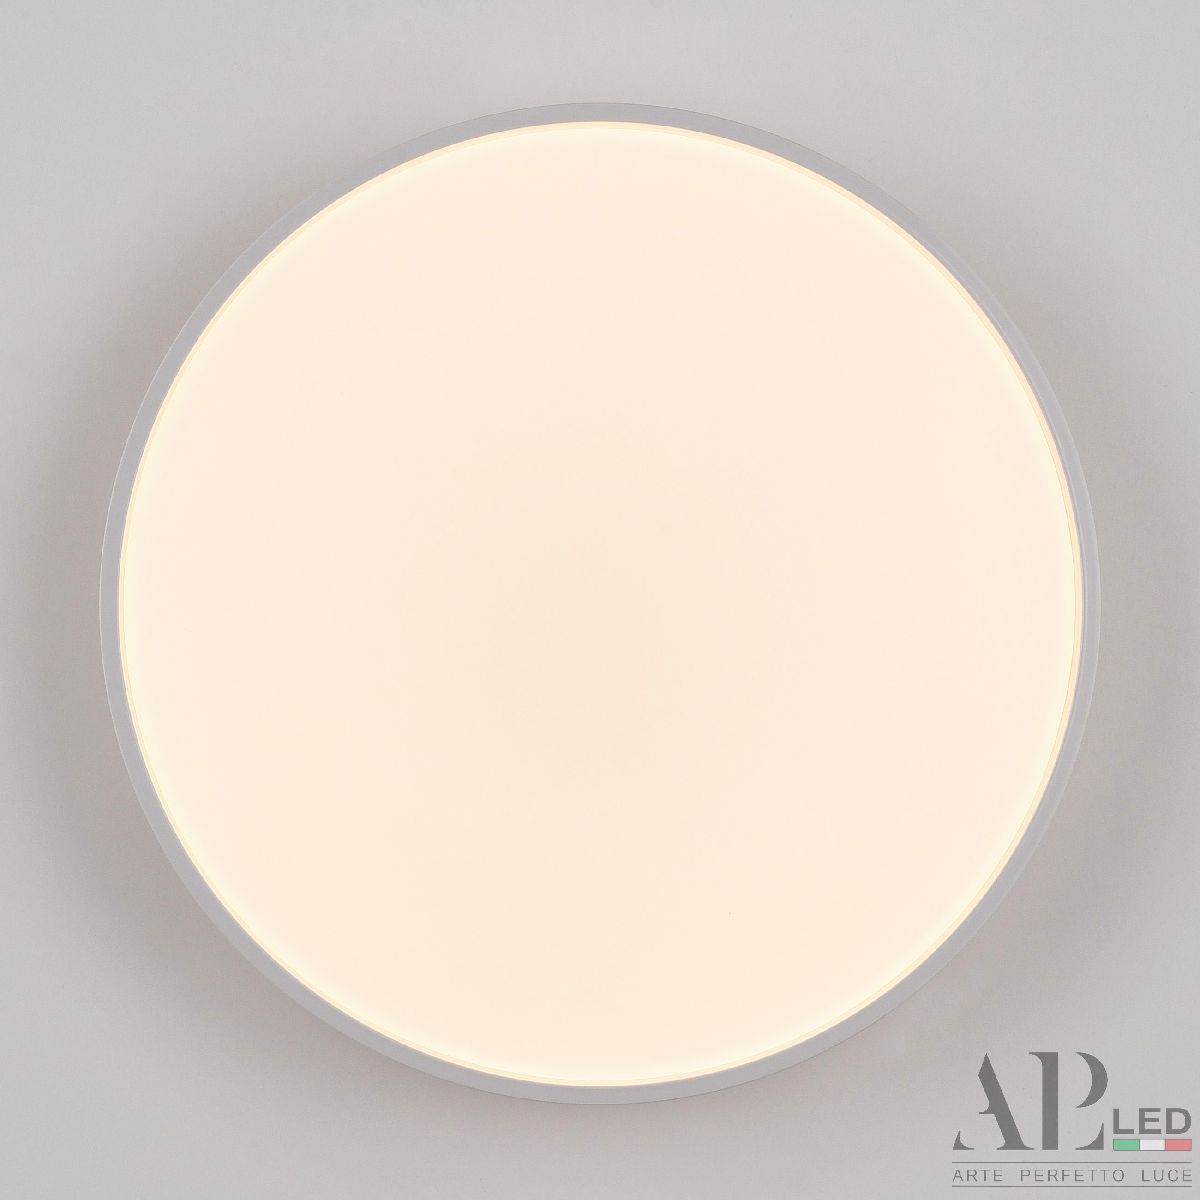 Потолочный светильник Arte Perfetto Luce Toscana 3315.XM302-1-328/18W/3K White TD